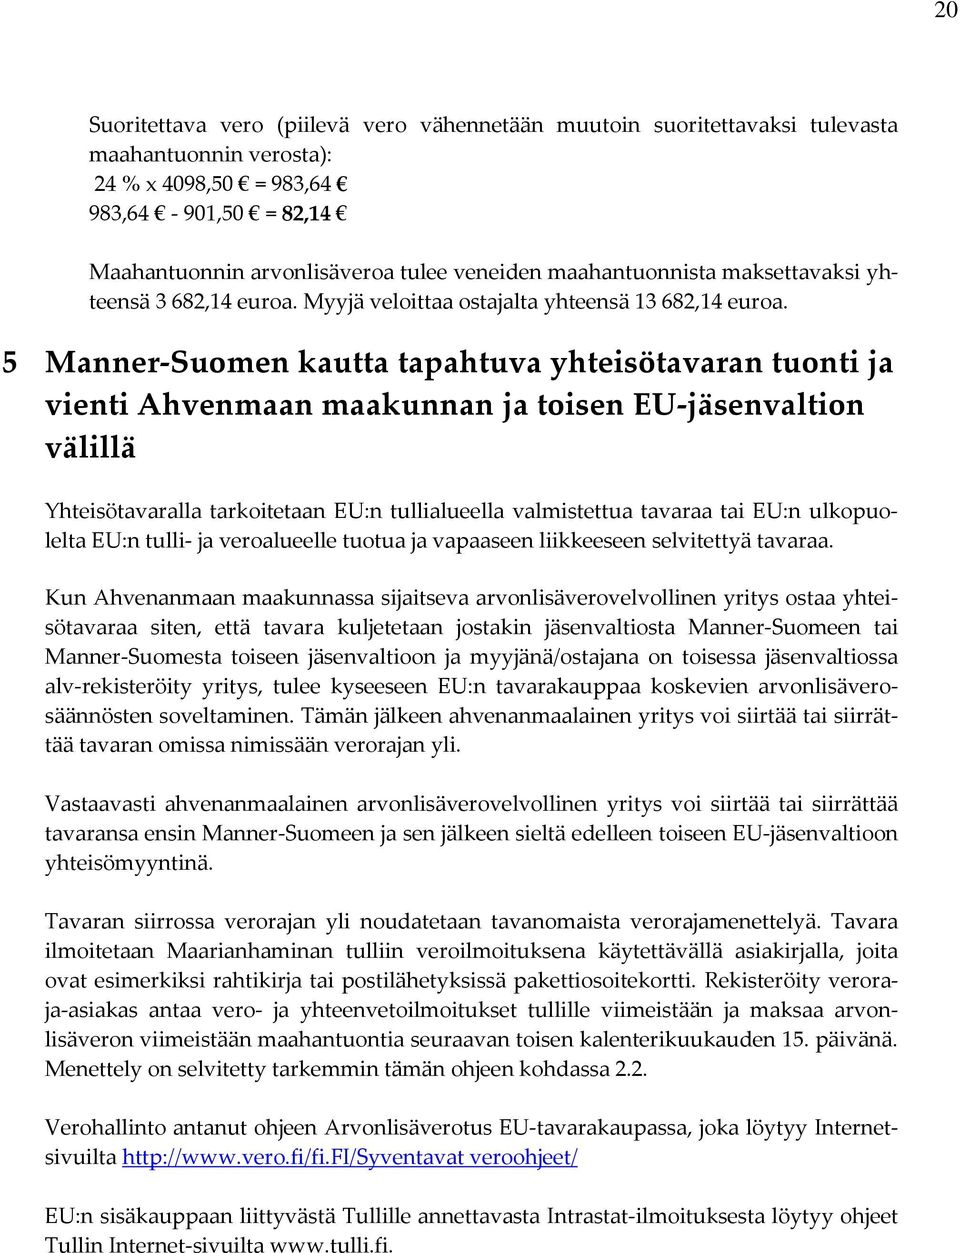 5 Manner-Suomen kautta tapahtuva yhteisötavaran tuonti ja vienti Ahvenmaan maakunnan ja toisen EU-jäsenvaltion välillä Yhteisötavaralla tarkoitetaan EU:n tullialueella valmistettua tavaraa tai EU:n